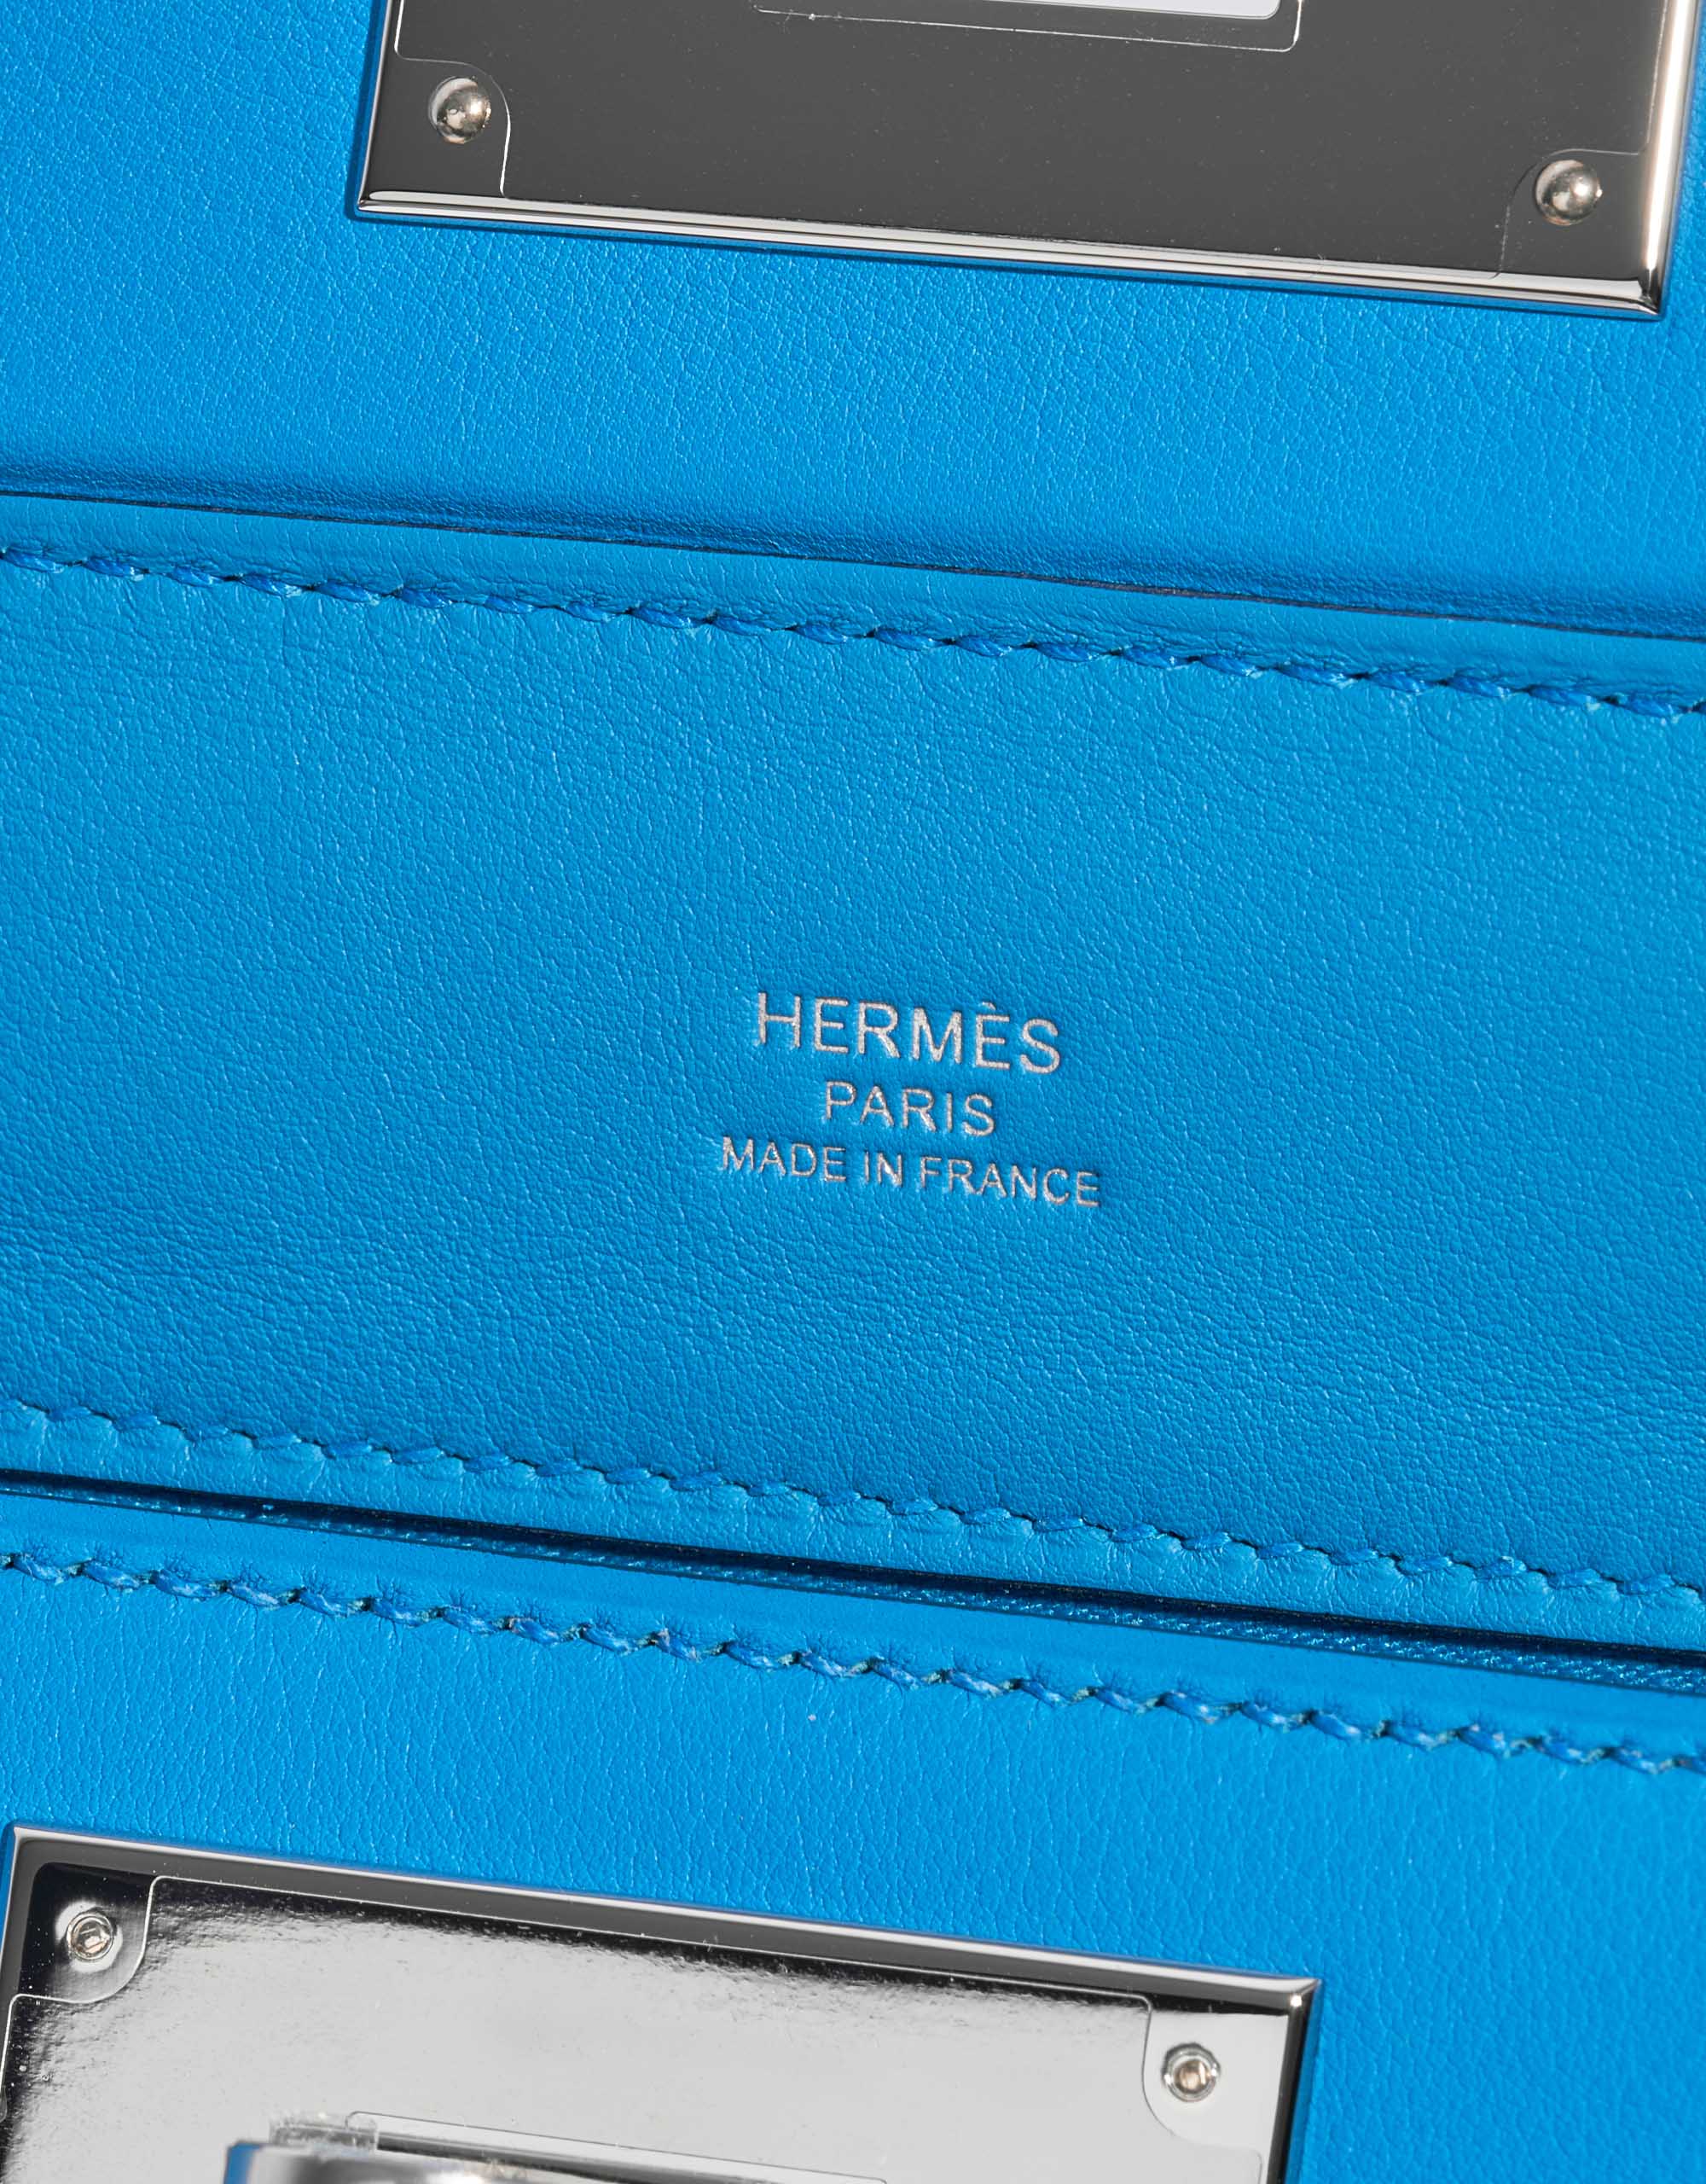 Hermes Mini 24/24 21 Bag Evercolor/Swift Calfskin in Black,Gold